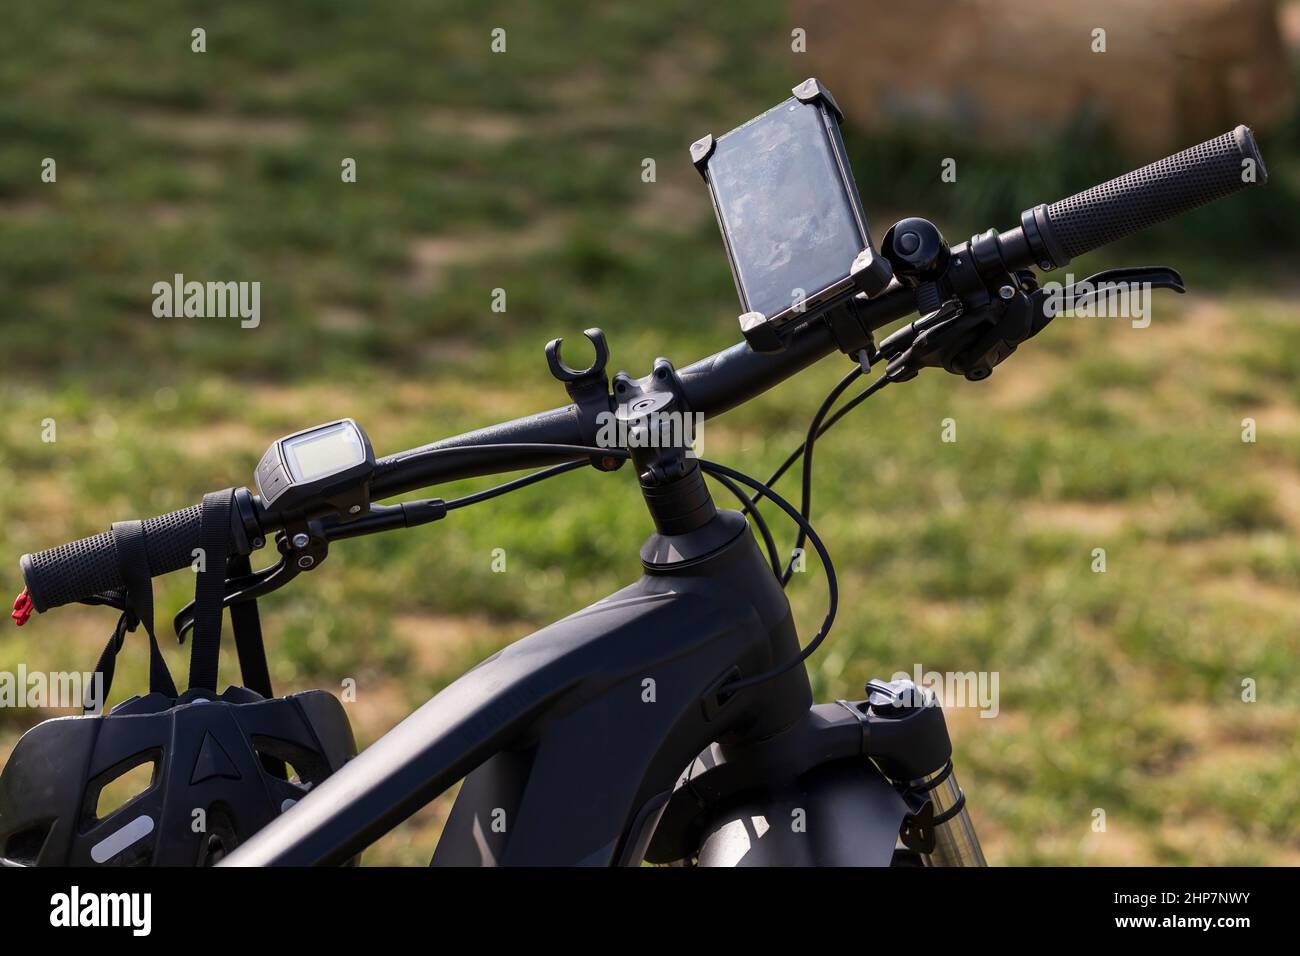 Manubri per bicicletta elettrici. Un computer di navigazione è collegato al manubrio e un casco da bicicletta è appeso su di essi. Foto Stock